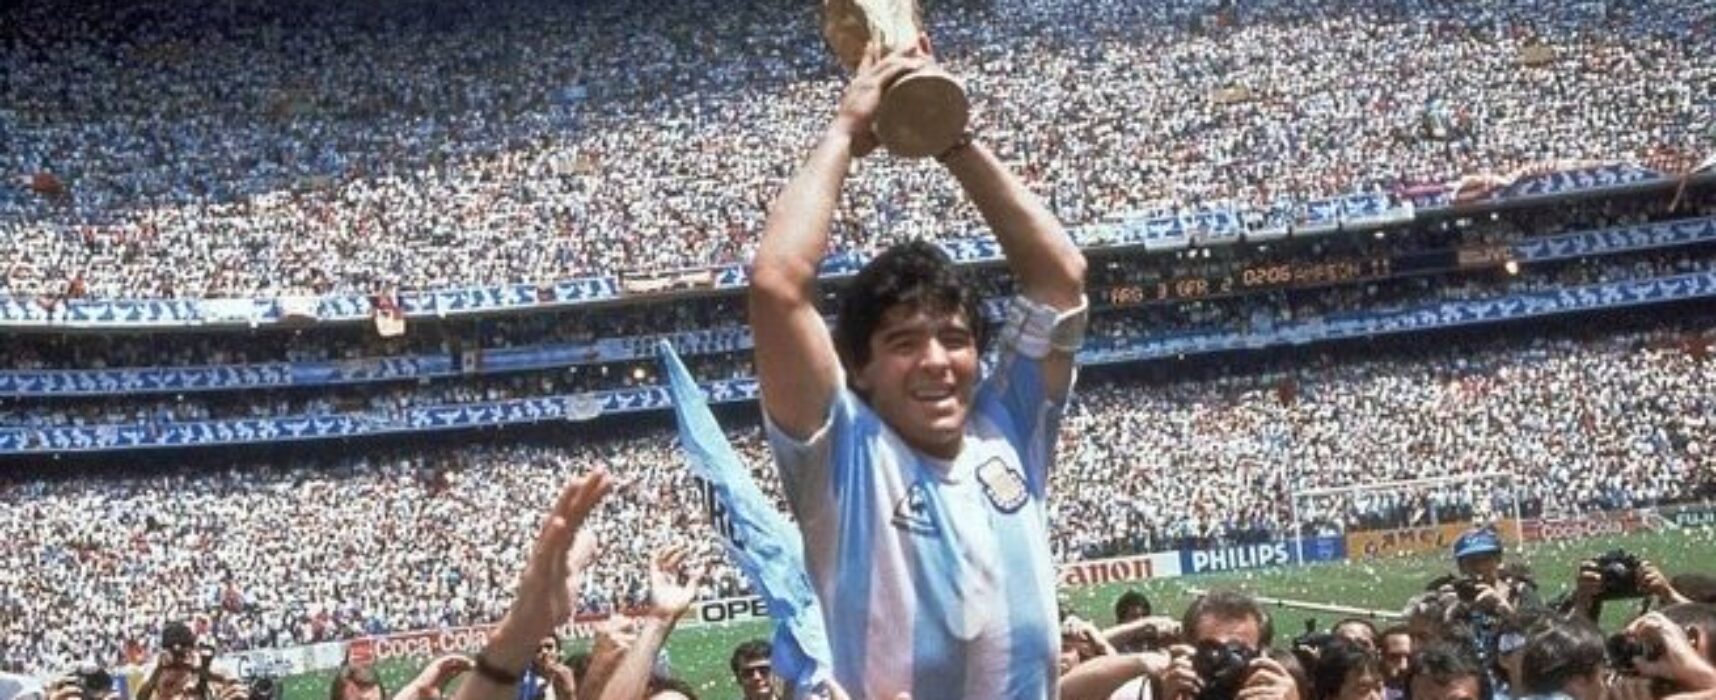 O ex-jogador de futebol argentino Diego Armando Maradona morreu nesta quarta-feira (25/11), aos 60 anos.